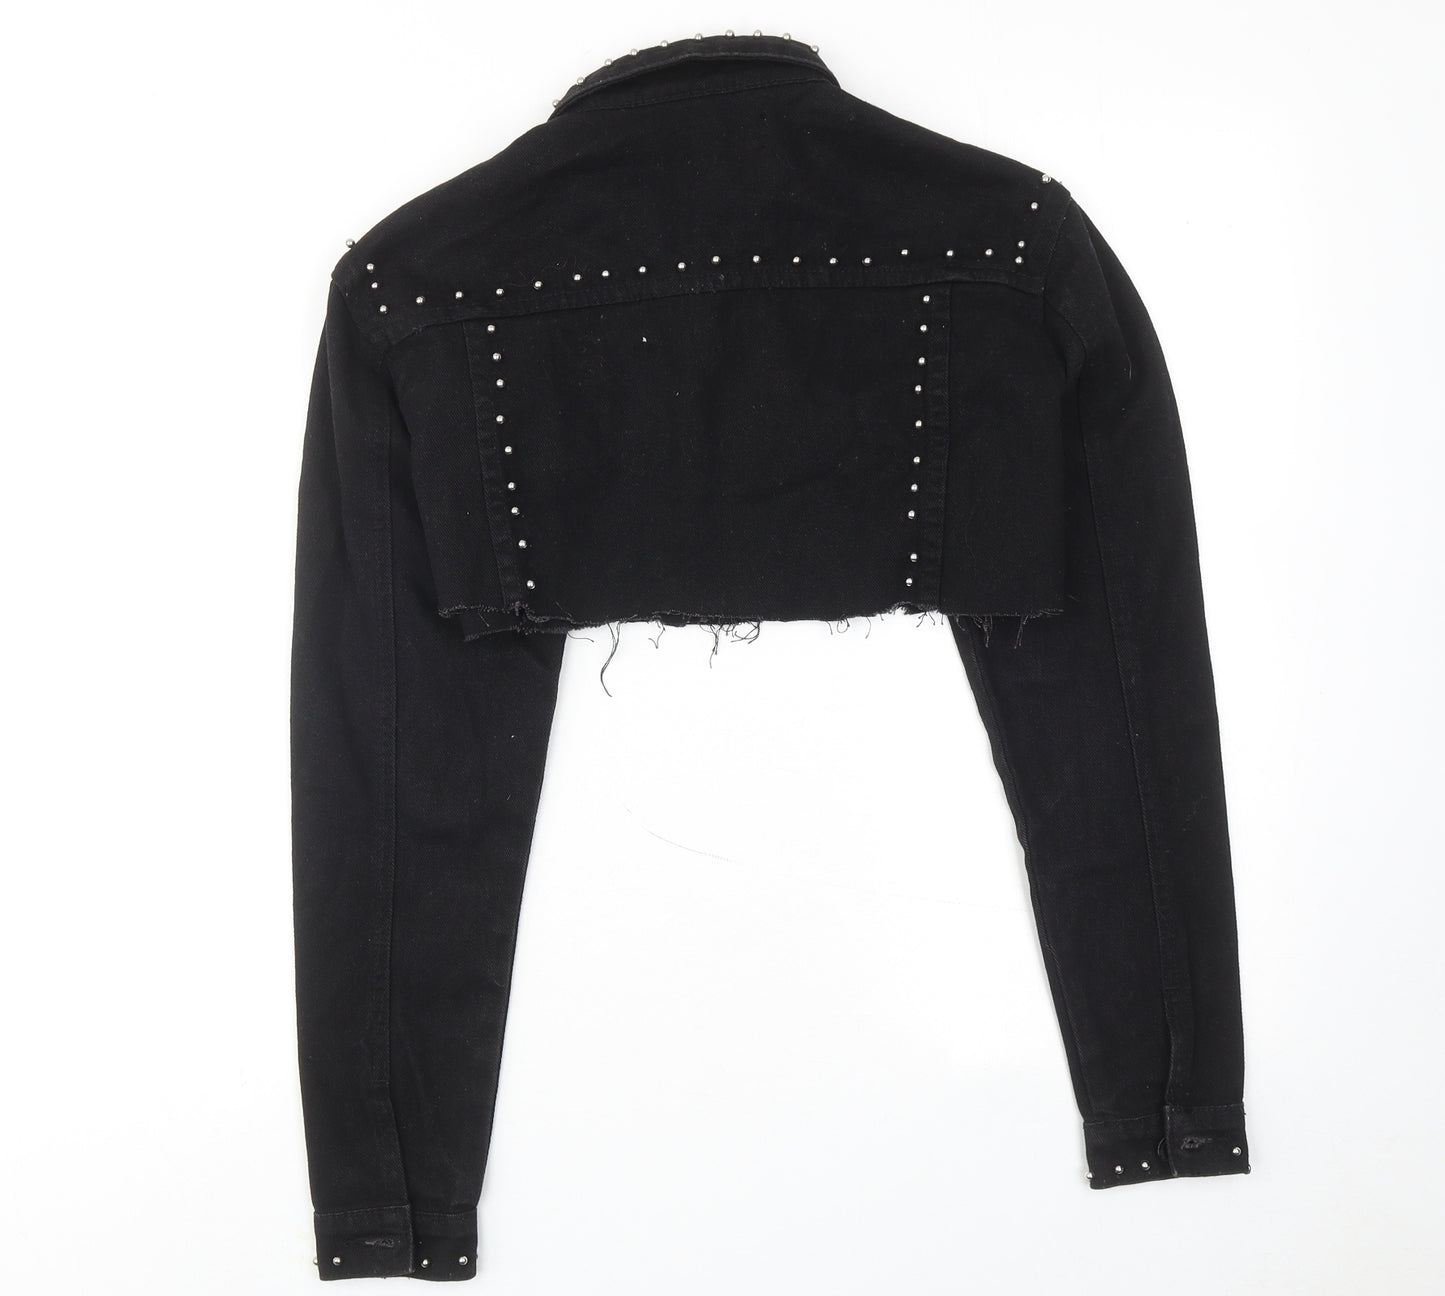 MANIER DE VOIR Womens Black Jacket Size S Button